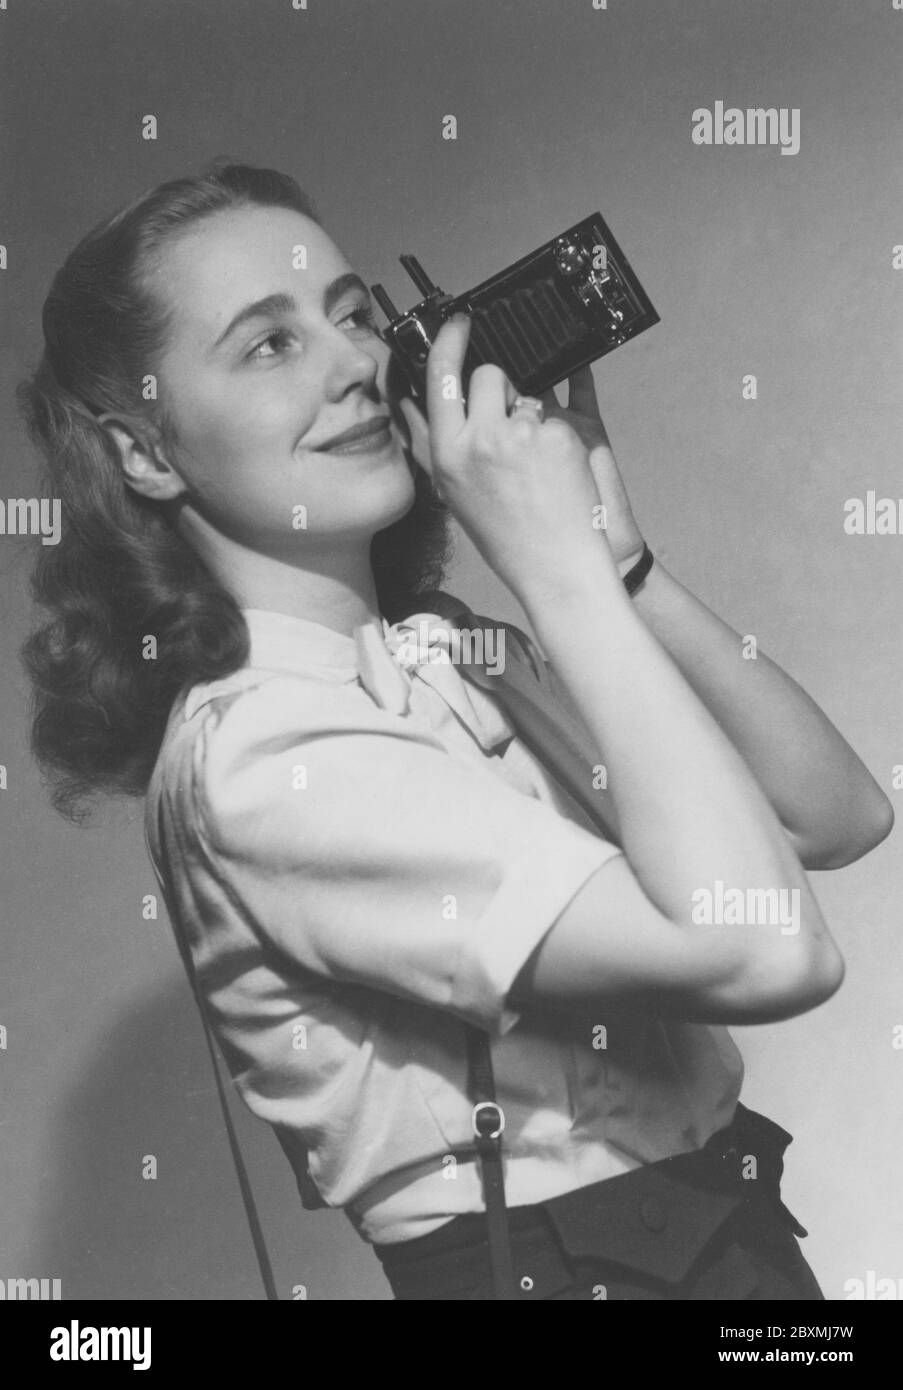 Amateurfotograf in den 1940er Jahren. Eine junge Frau fotografiert an einem Sommertag. Das Kameramodell ist praktisch. Wenn Sie es nicht verwenden, werden die Linse und der Balg in das Kameragehäuse gefaltet. Um Bilder aufzunehmen, haben Sie es geöffnet und waren bereit zu gehen. Die Kamera produzierte analogen Film. Margareta von Törne ist beim Fotografieren abgebildet und die Fotografie wurde ursprünglich auf dem Cover eines Buches mit dem Titel Handbuch für den Amateurfotografen 1948 verwendet. Stockfoto